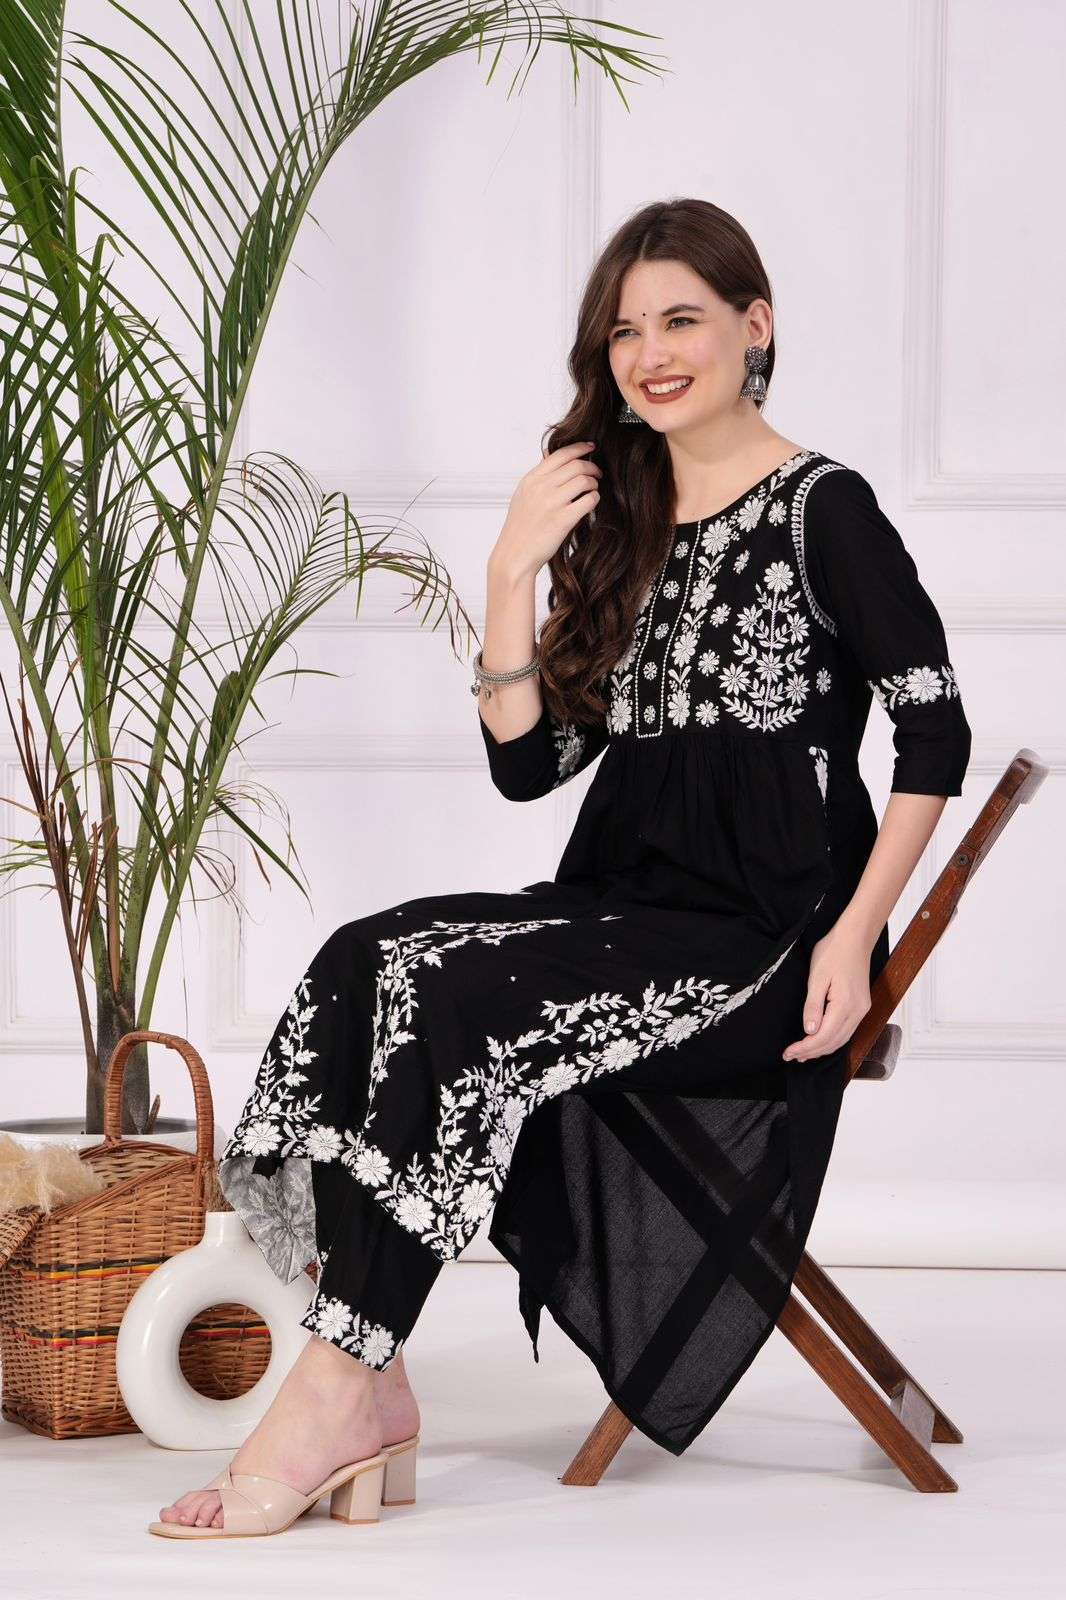 Buy Black and White Printed Crepe Cap Sleeves Kurti Online in India |  Stylish kurtis design, Long kurti designs, Designer kurti patterns